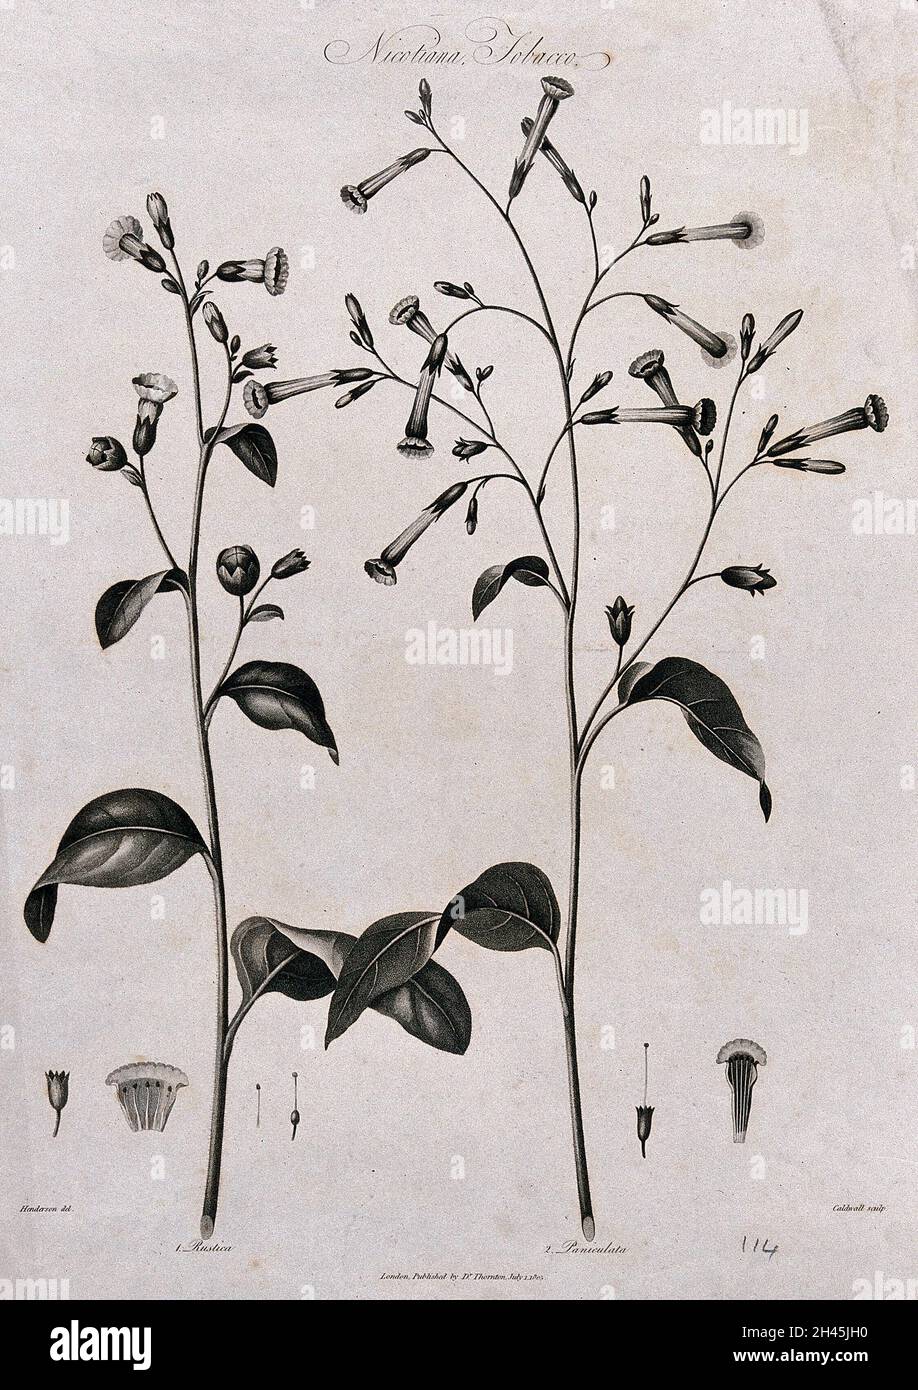 Tabakpflanzen (Nicotiana rustica und N. paniculata): Blühender und fruchtender Stamm beider Arten mit ihren jeweiligen floralen Segmenten.Gravieren von J.Caldwall, um 1805, nach P.Henderson. Stockfoto